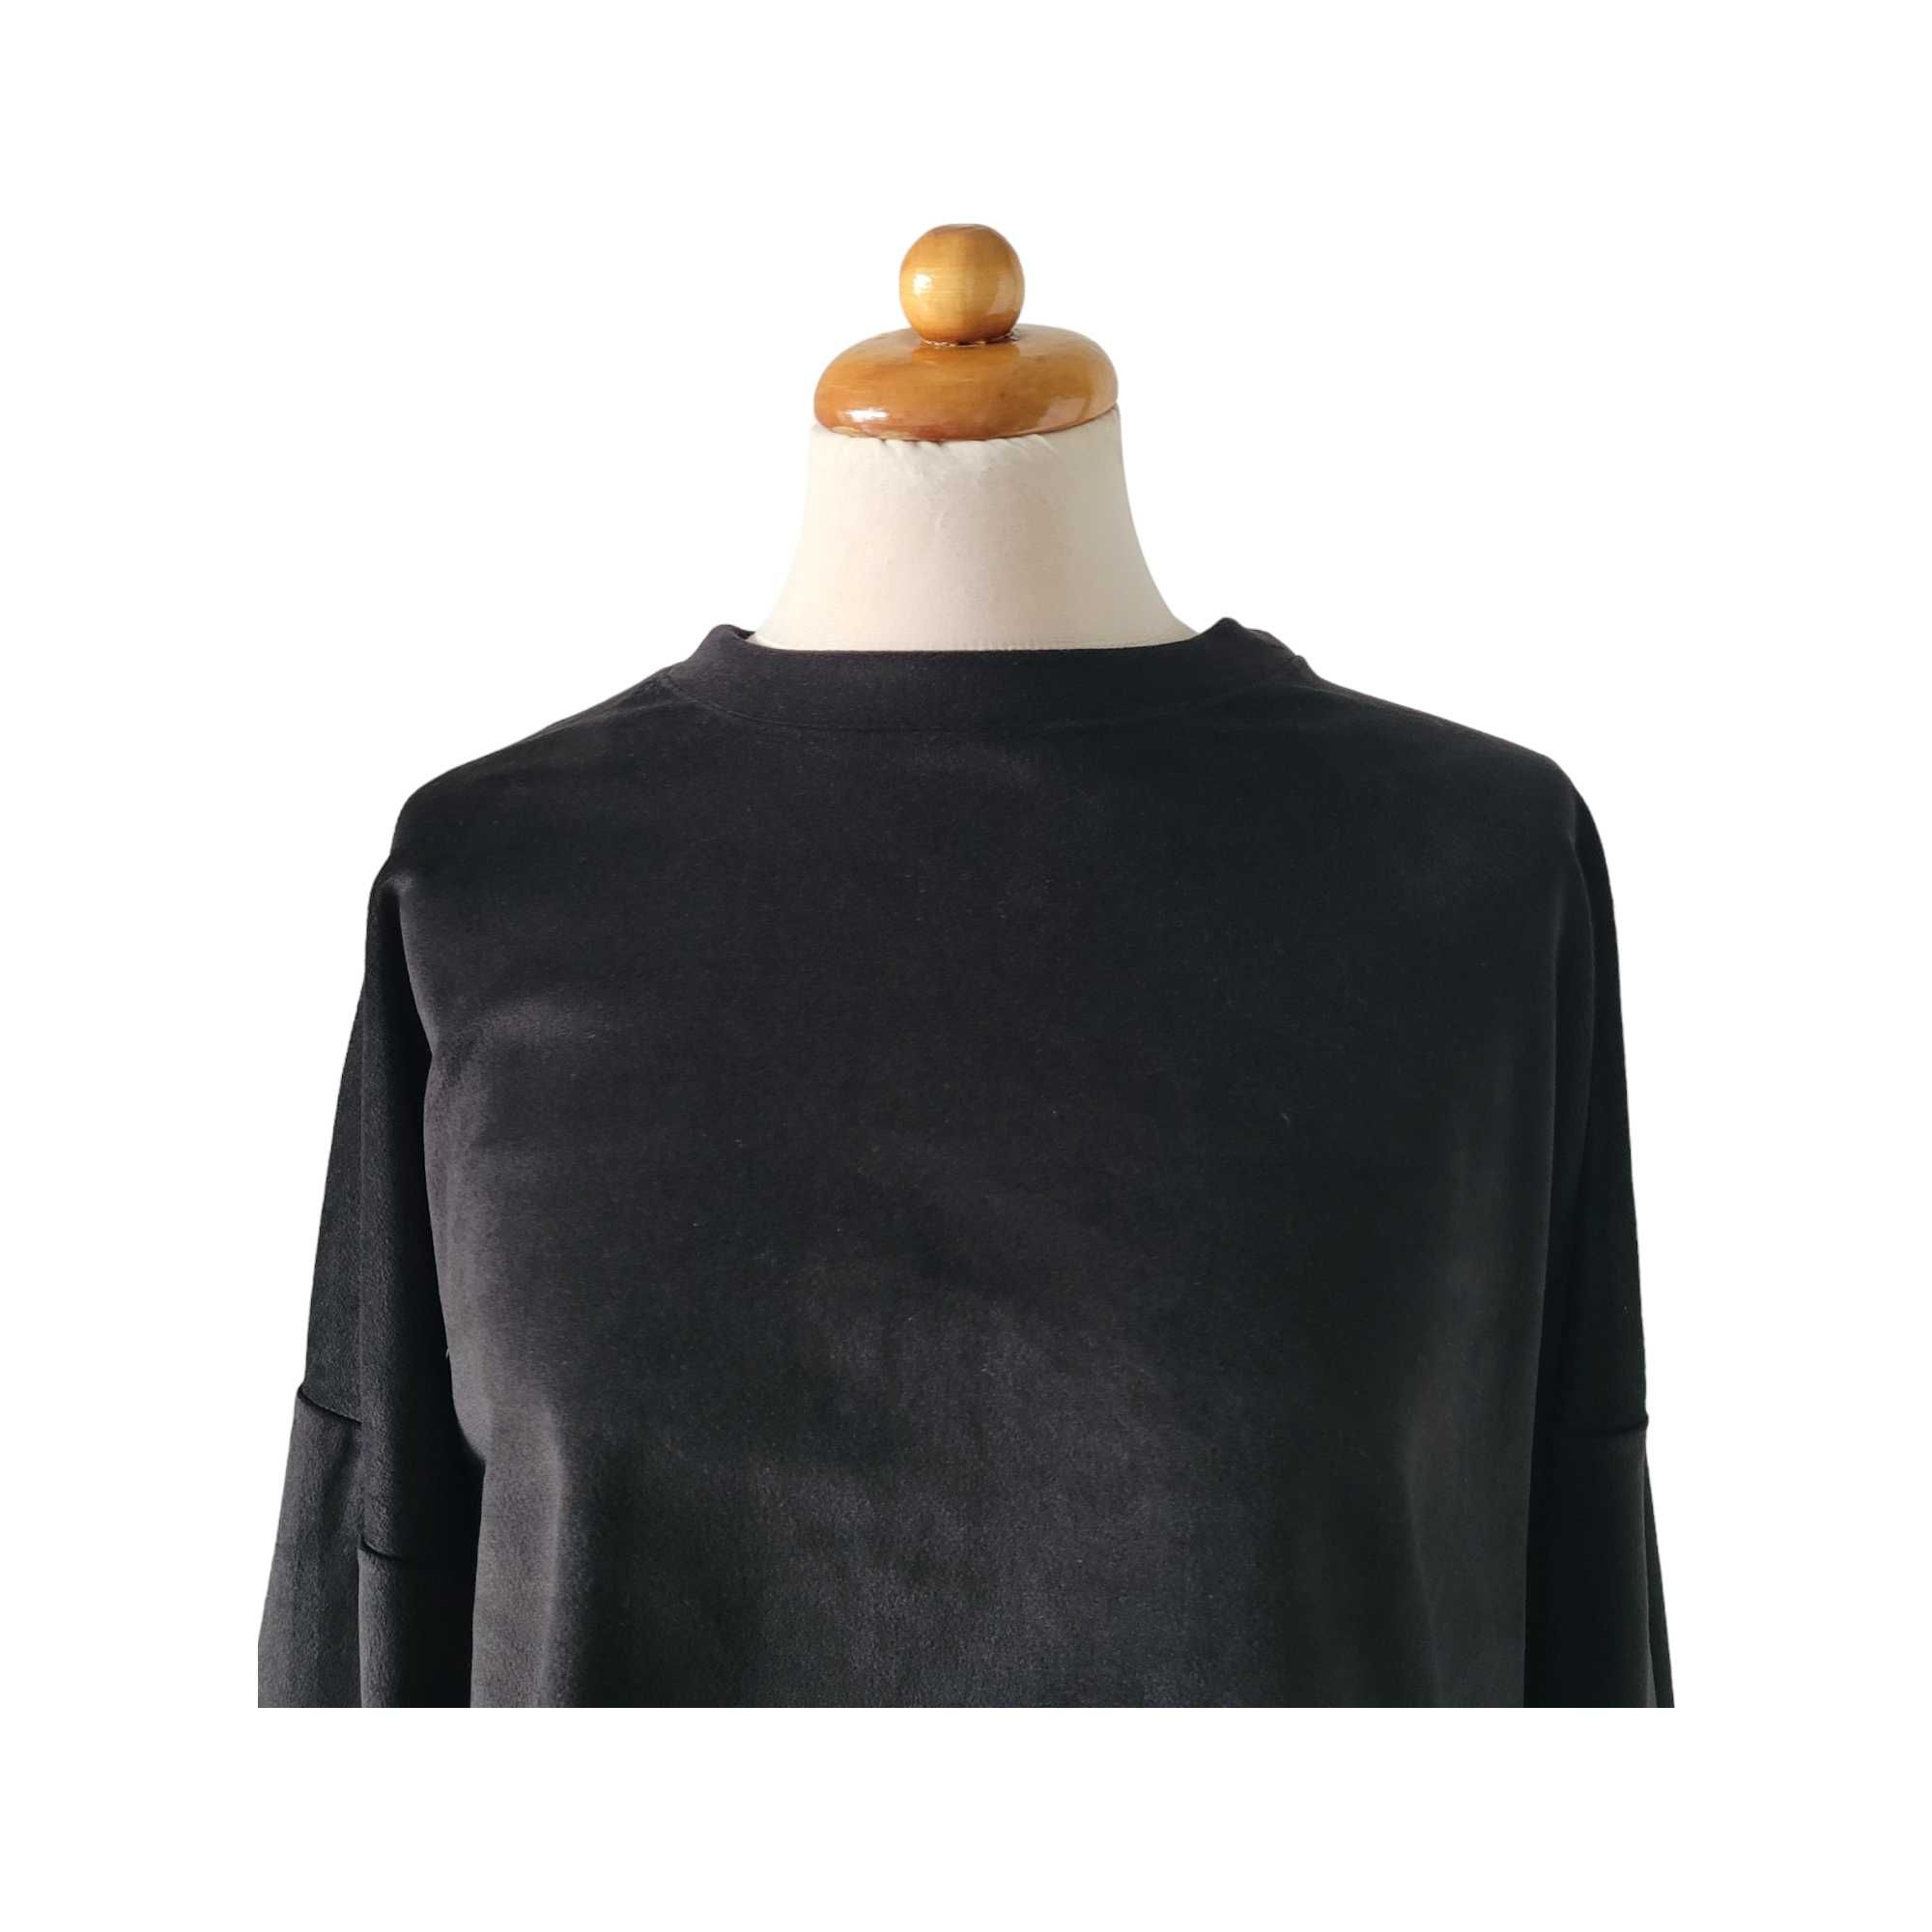 Czarna welurowa aksamitna bluza damska krój nietoperz 80% bawełna